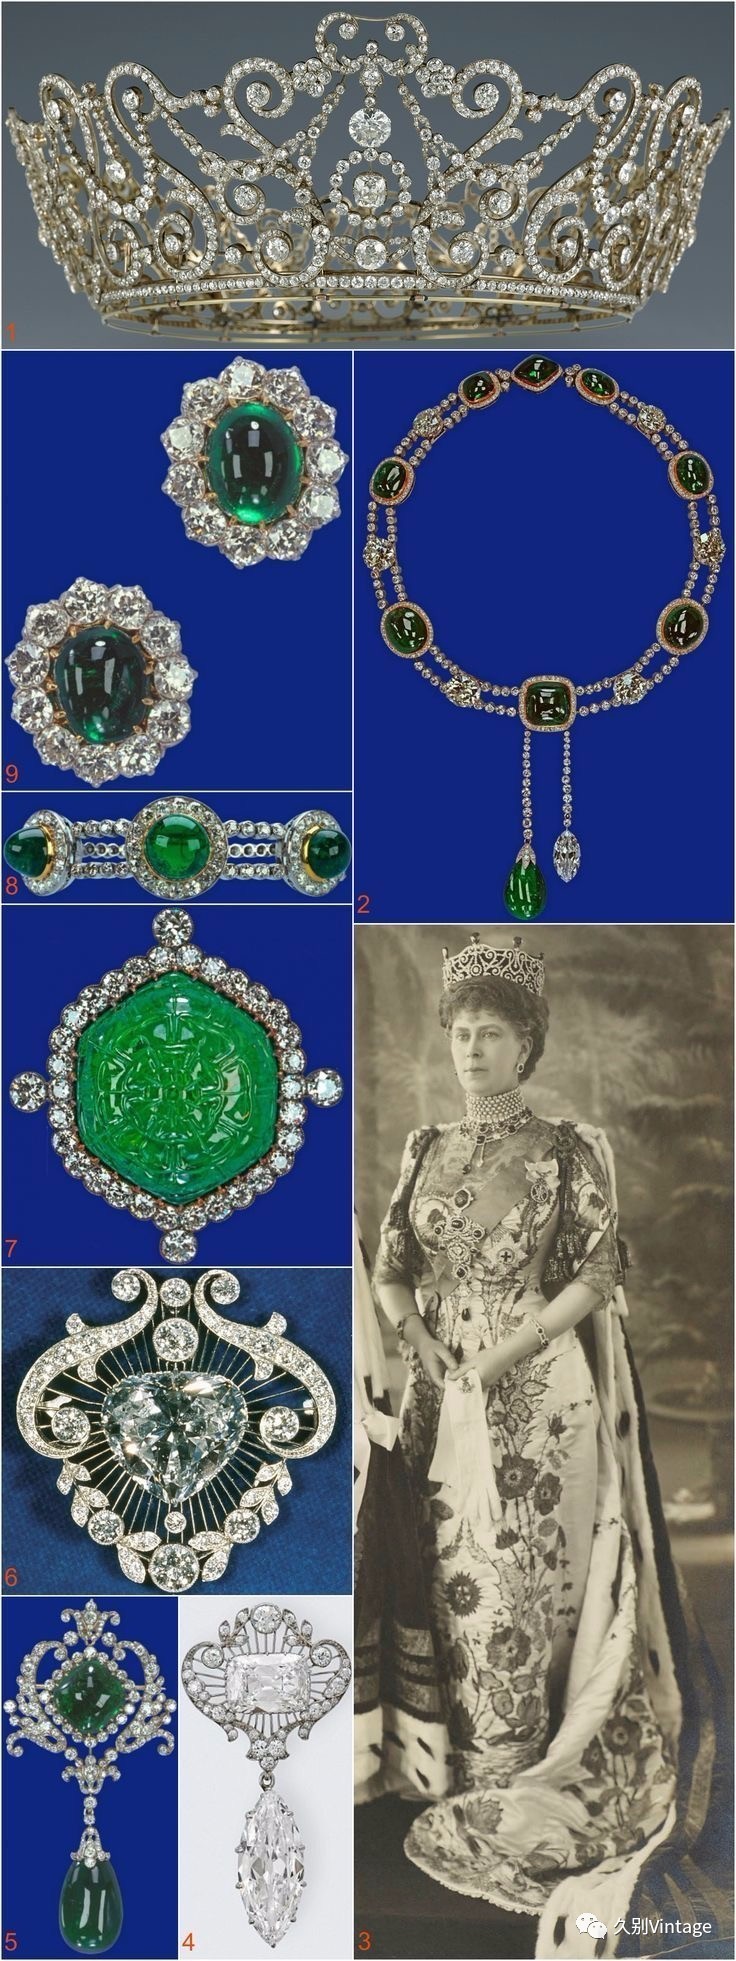 法国玛丽皇后的珠宝图片